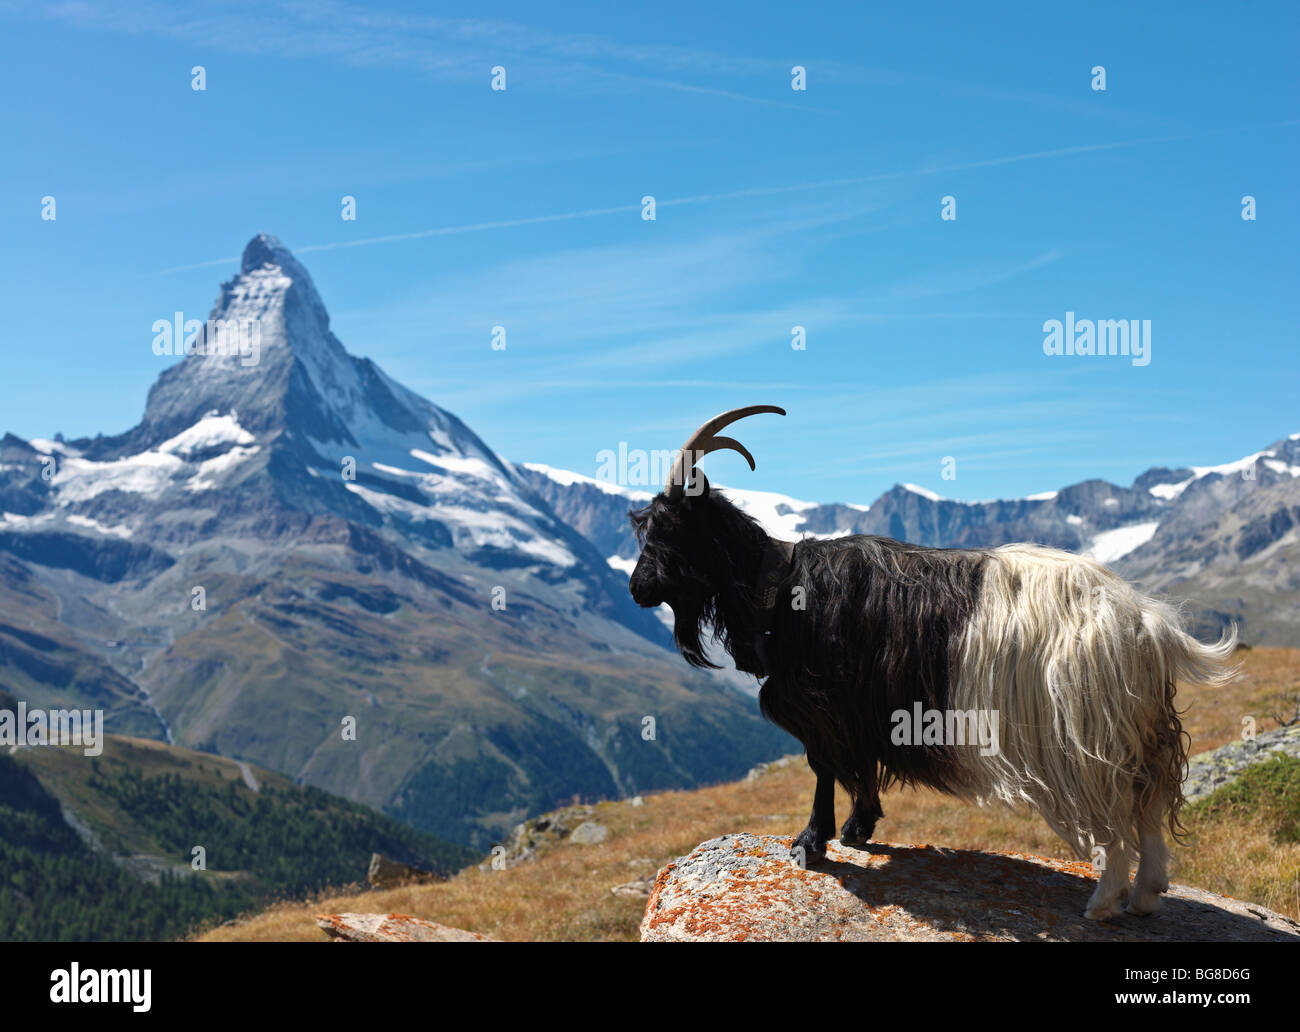 Suisse, Valais, Zermatt, la chèvre de montagne avec le Cervin en arrière-plan Banque D'Images